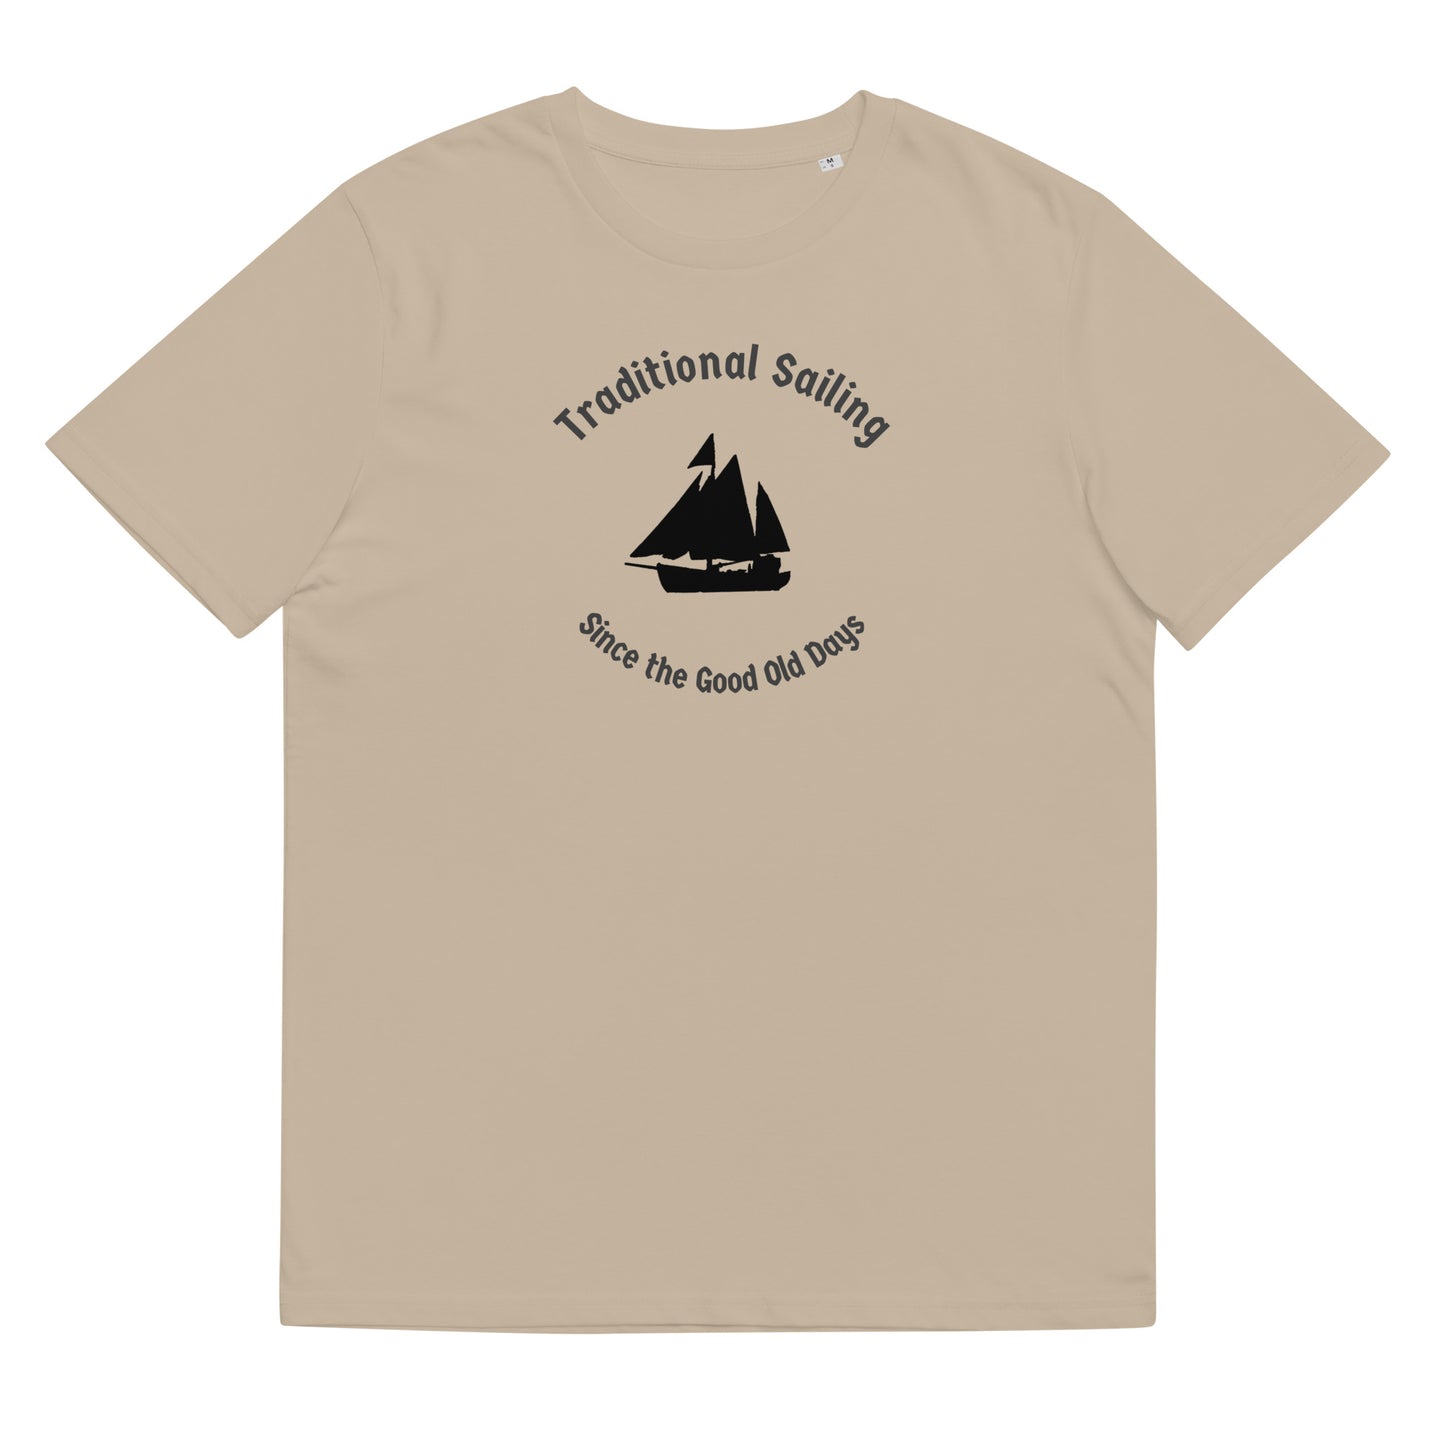 Traditional Sailing shirt